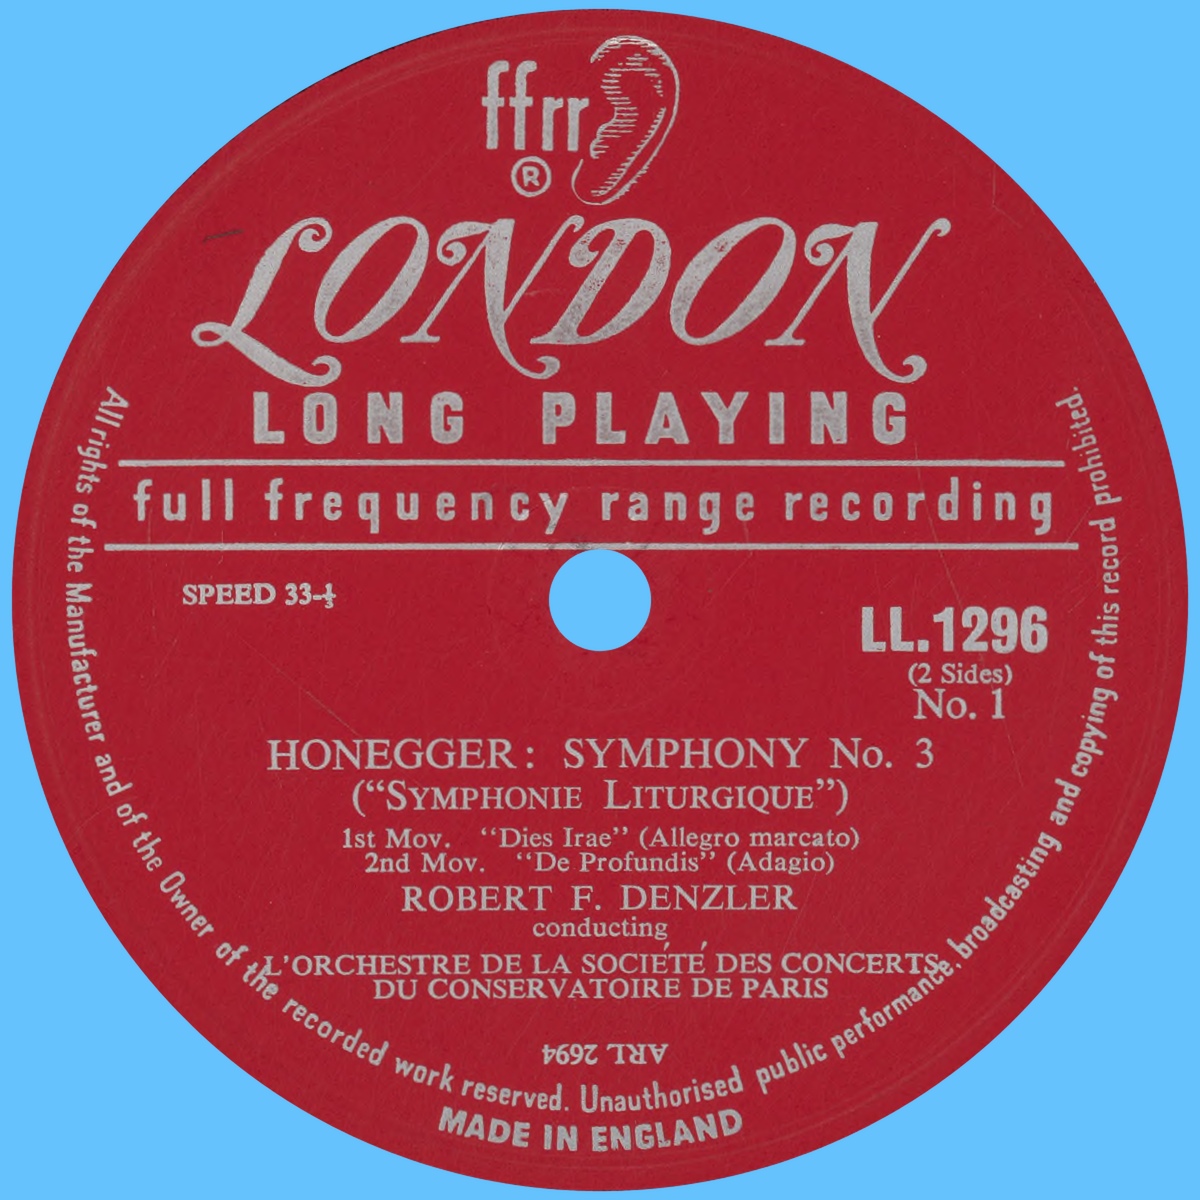 Étiquette recto du disque Decca LONDON LL 1296